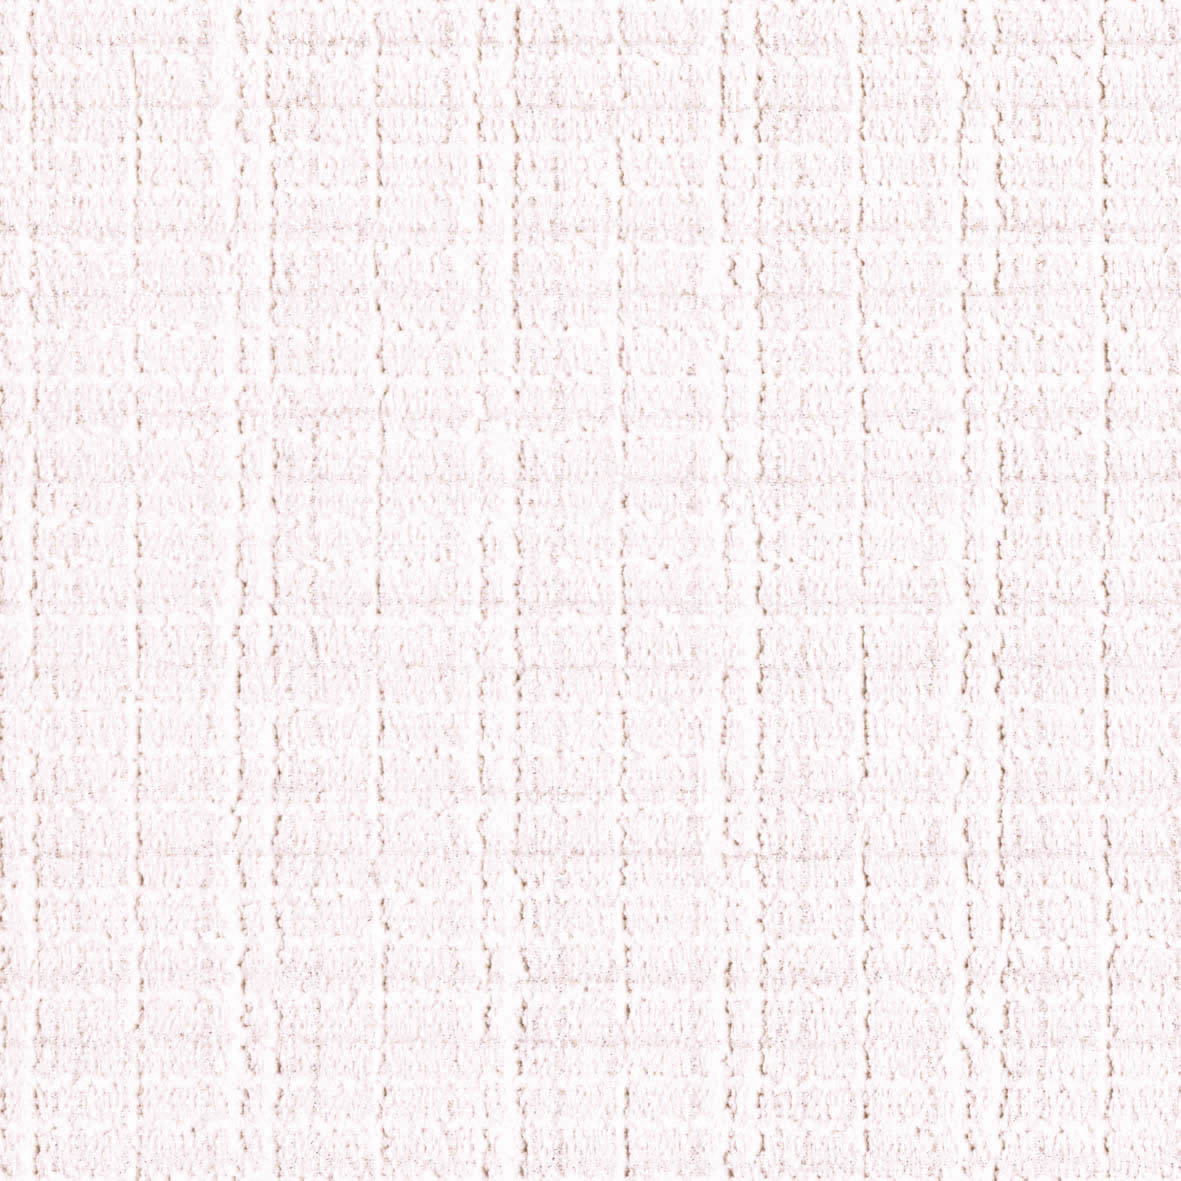 【のり付き】 LV-3275 リリカラ 壁紙/クロス 切売 リリカラ のり付き壁紙/クロス